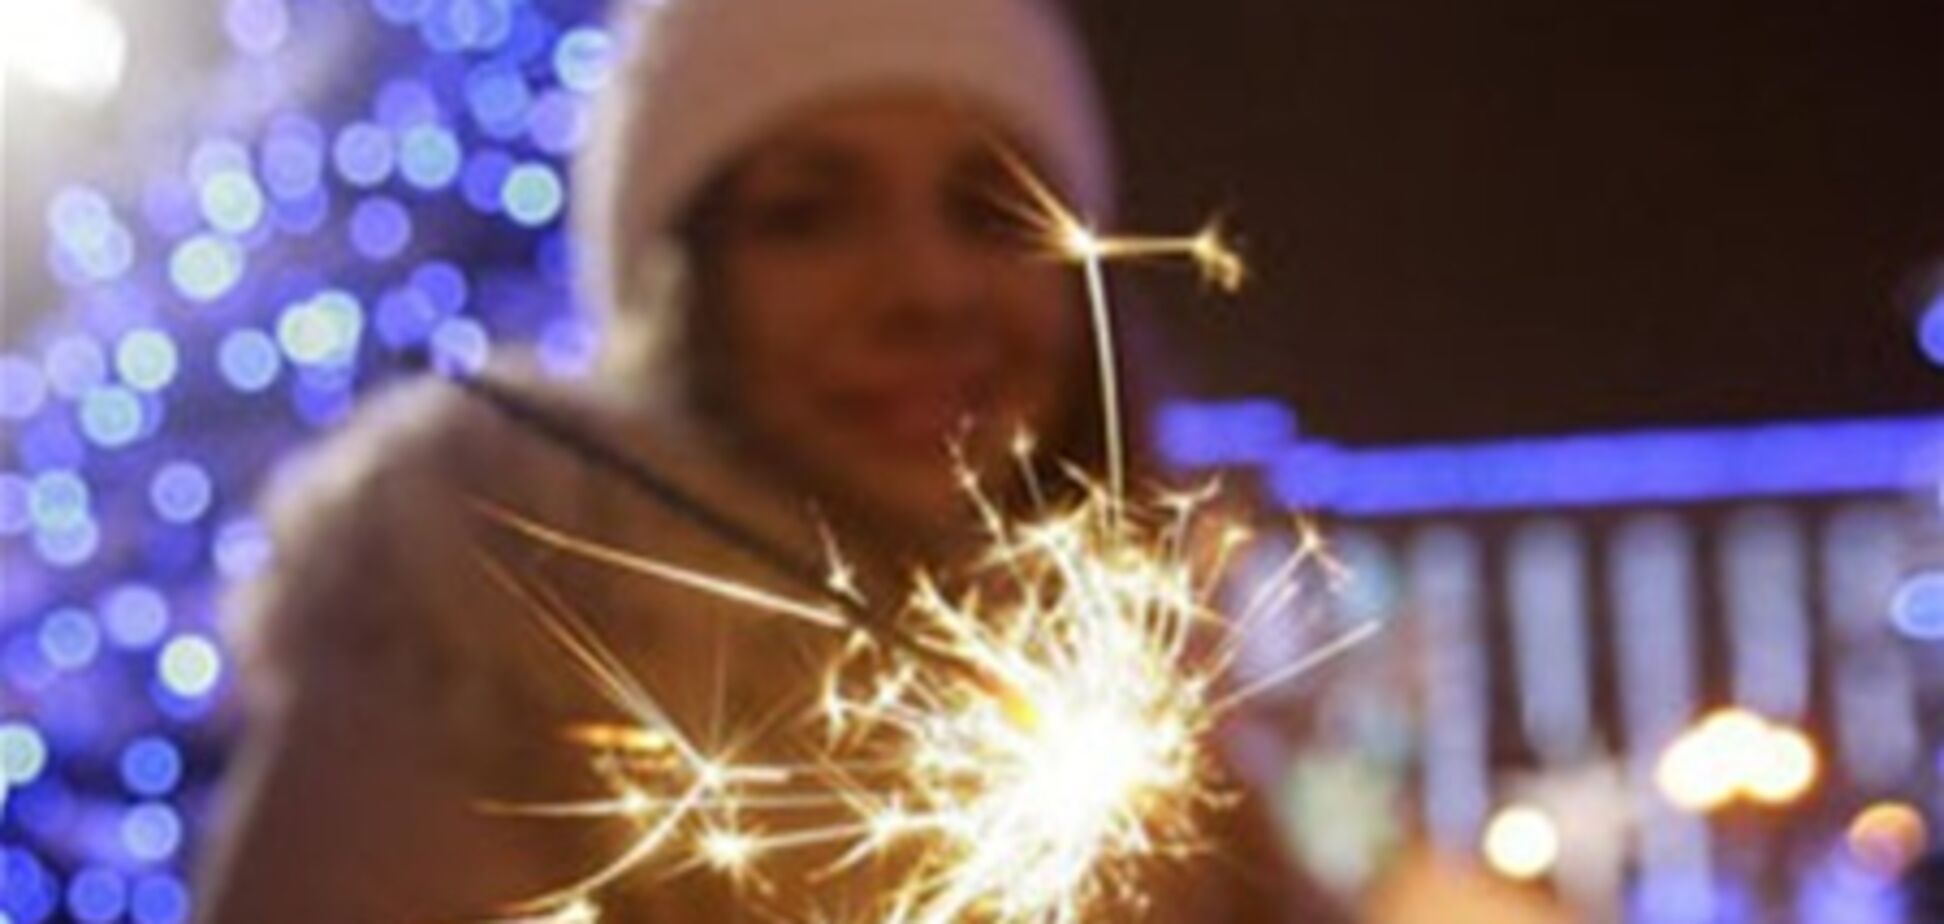 МВД: украинцы встретили новый год спокойно, без грубых правонарушений